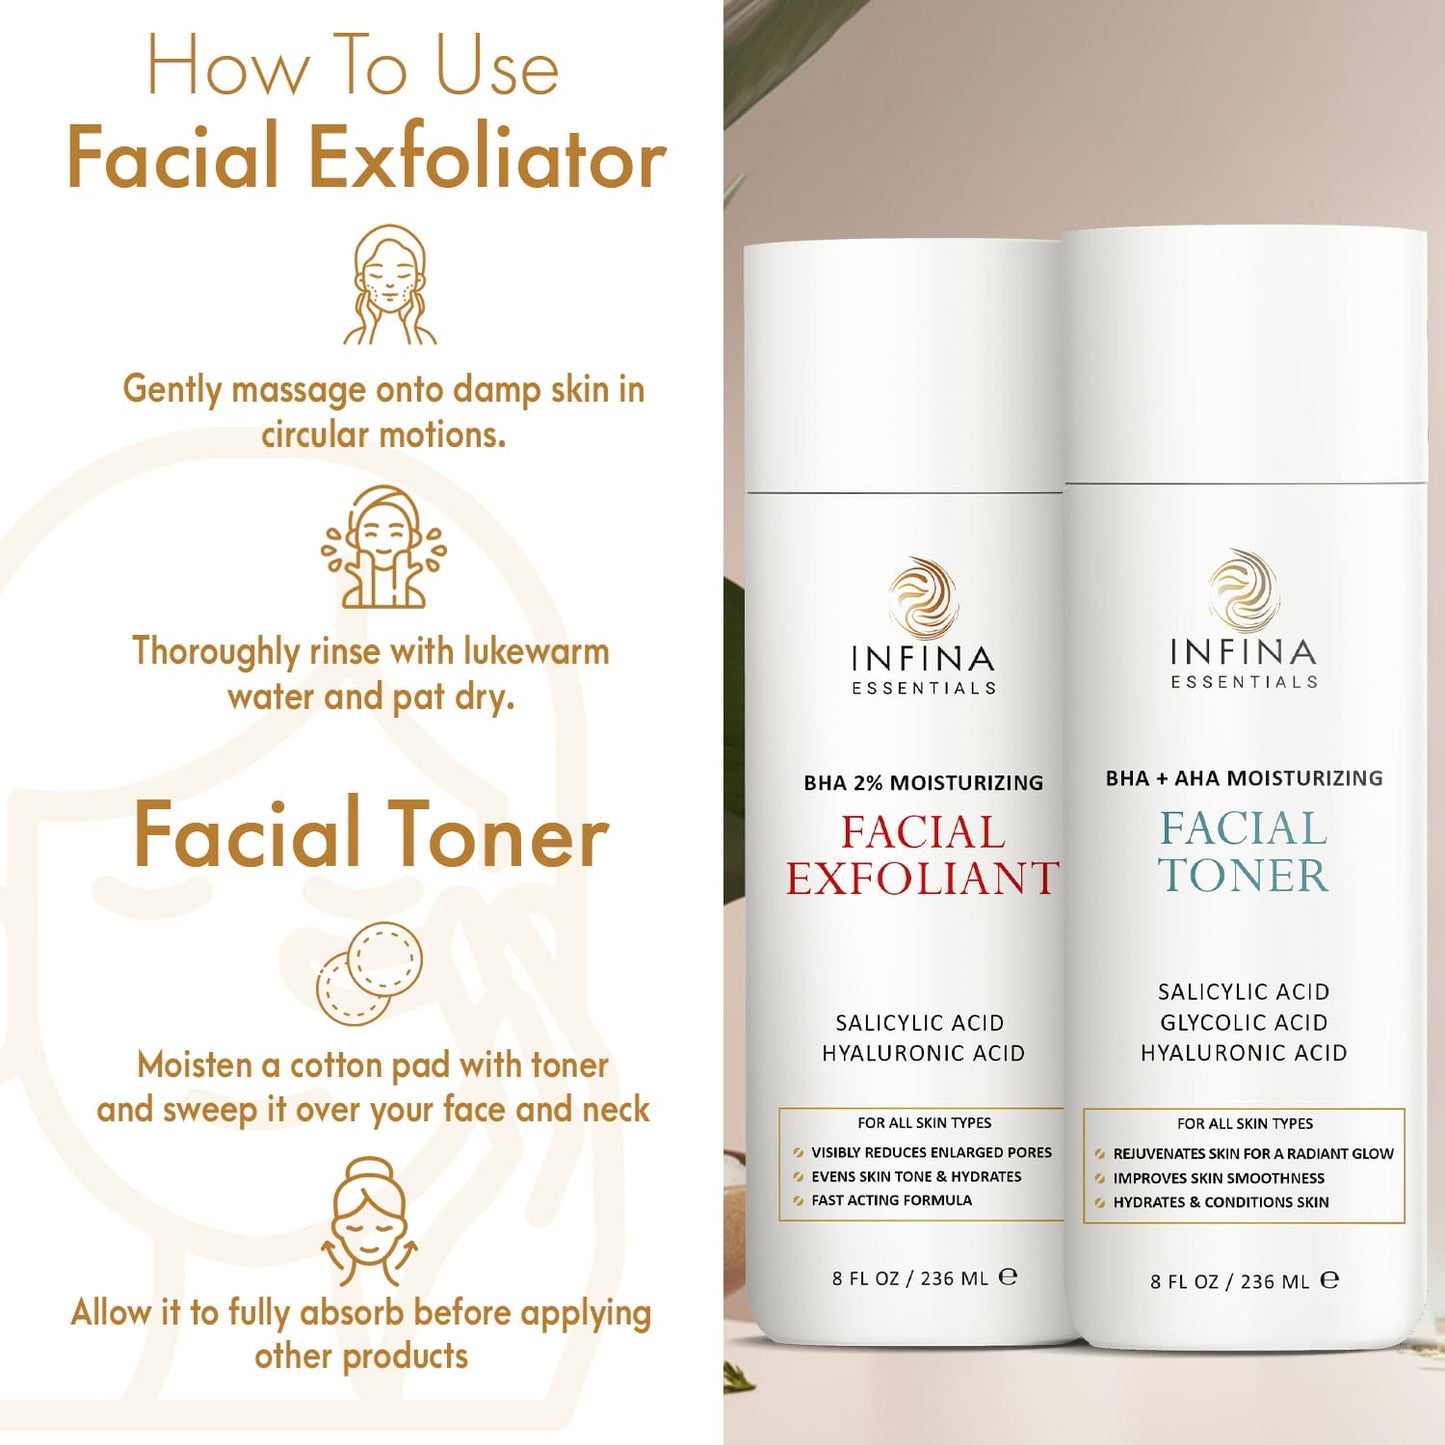 Face Exfoliator & Toner for Face - Revitalizing Facial Toner & Pore Reducing BHA Liquid Exfoliant